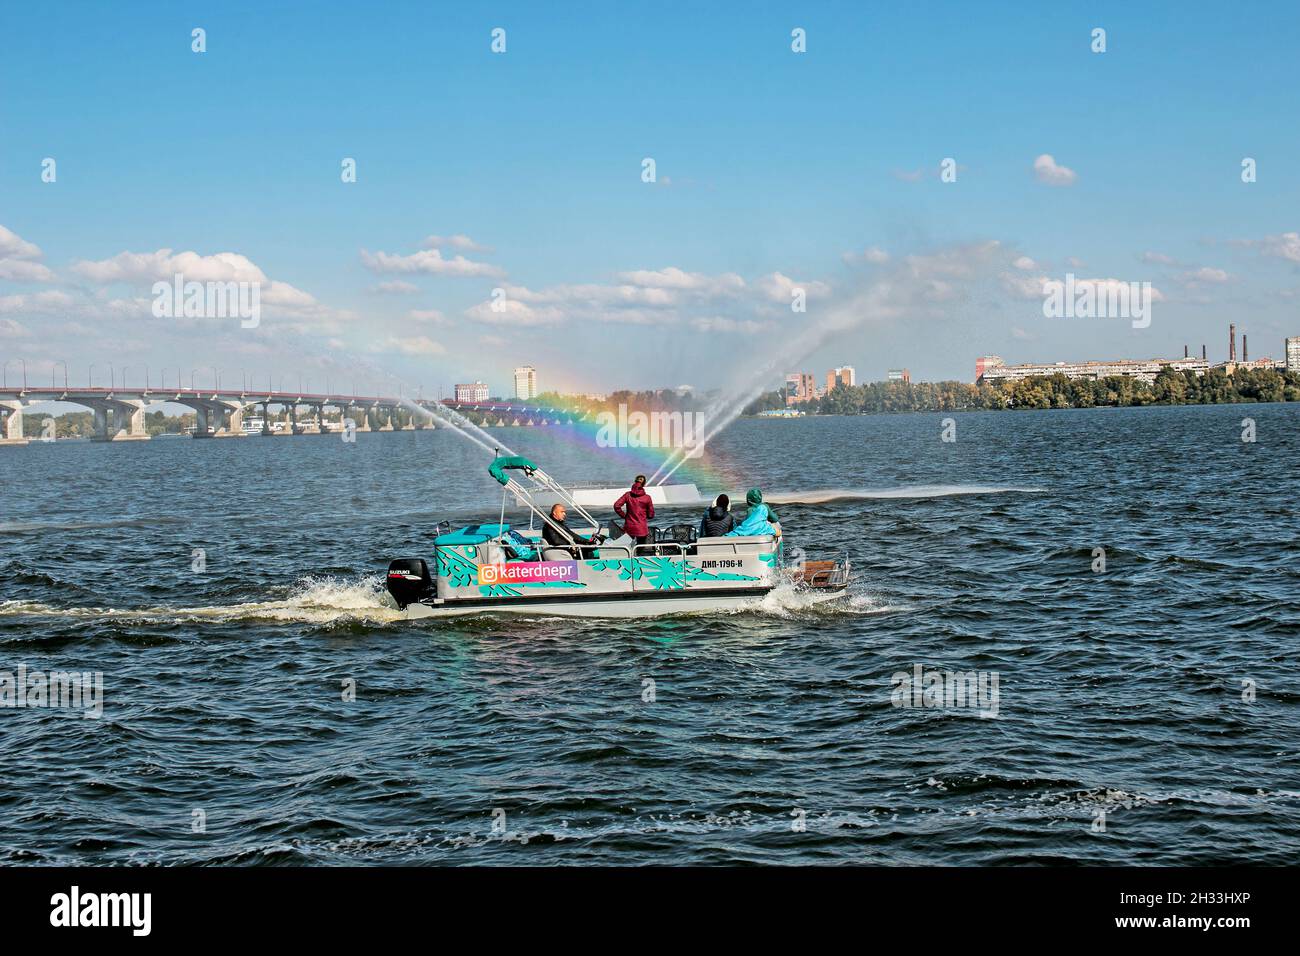 Dnepropetrovsk, Ucrania - 10.05.2021: Los habitantes de la ciudad en un barco de placer admirar la fuente con un hermoso arco iris. Fondo azul cielo. Arco iris de Foto de stock